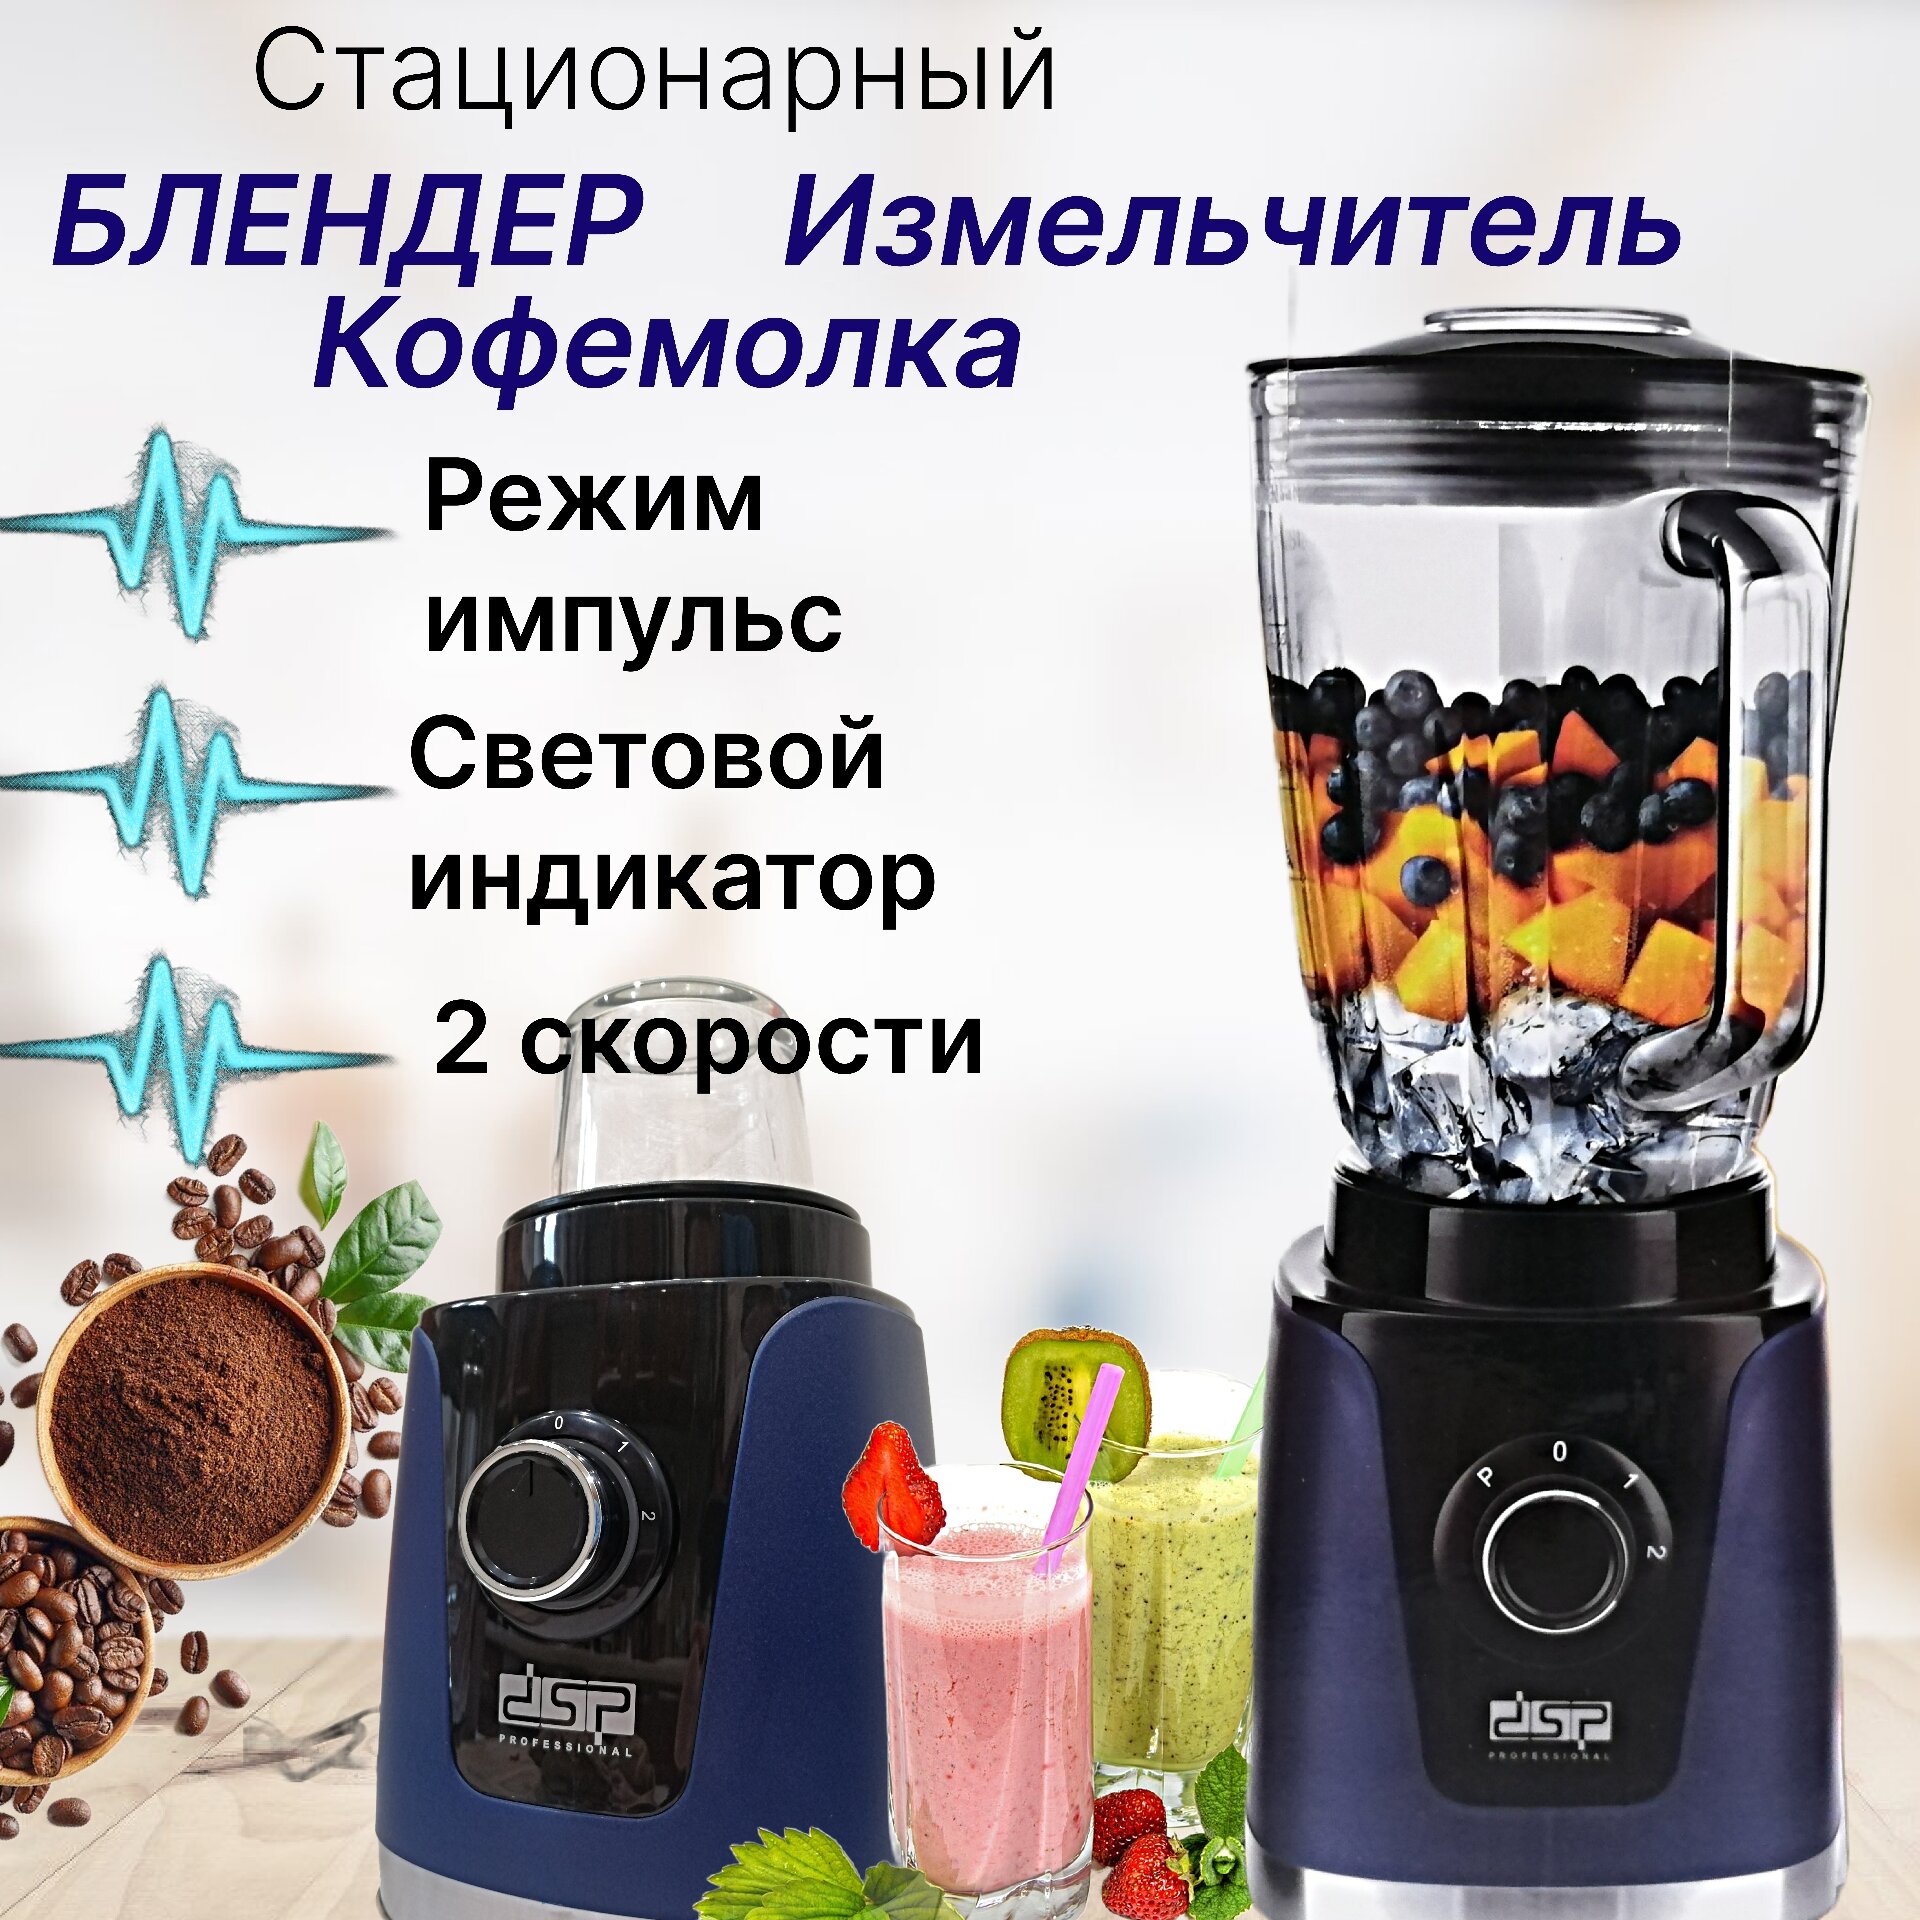 Кухонная машина Блендер Кофемолка стационарная домашняя для смузи коктейлей / Измельчитель электрический 350 Вт